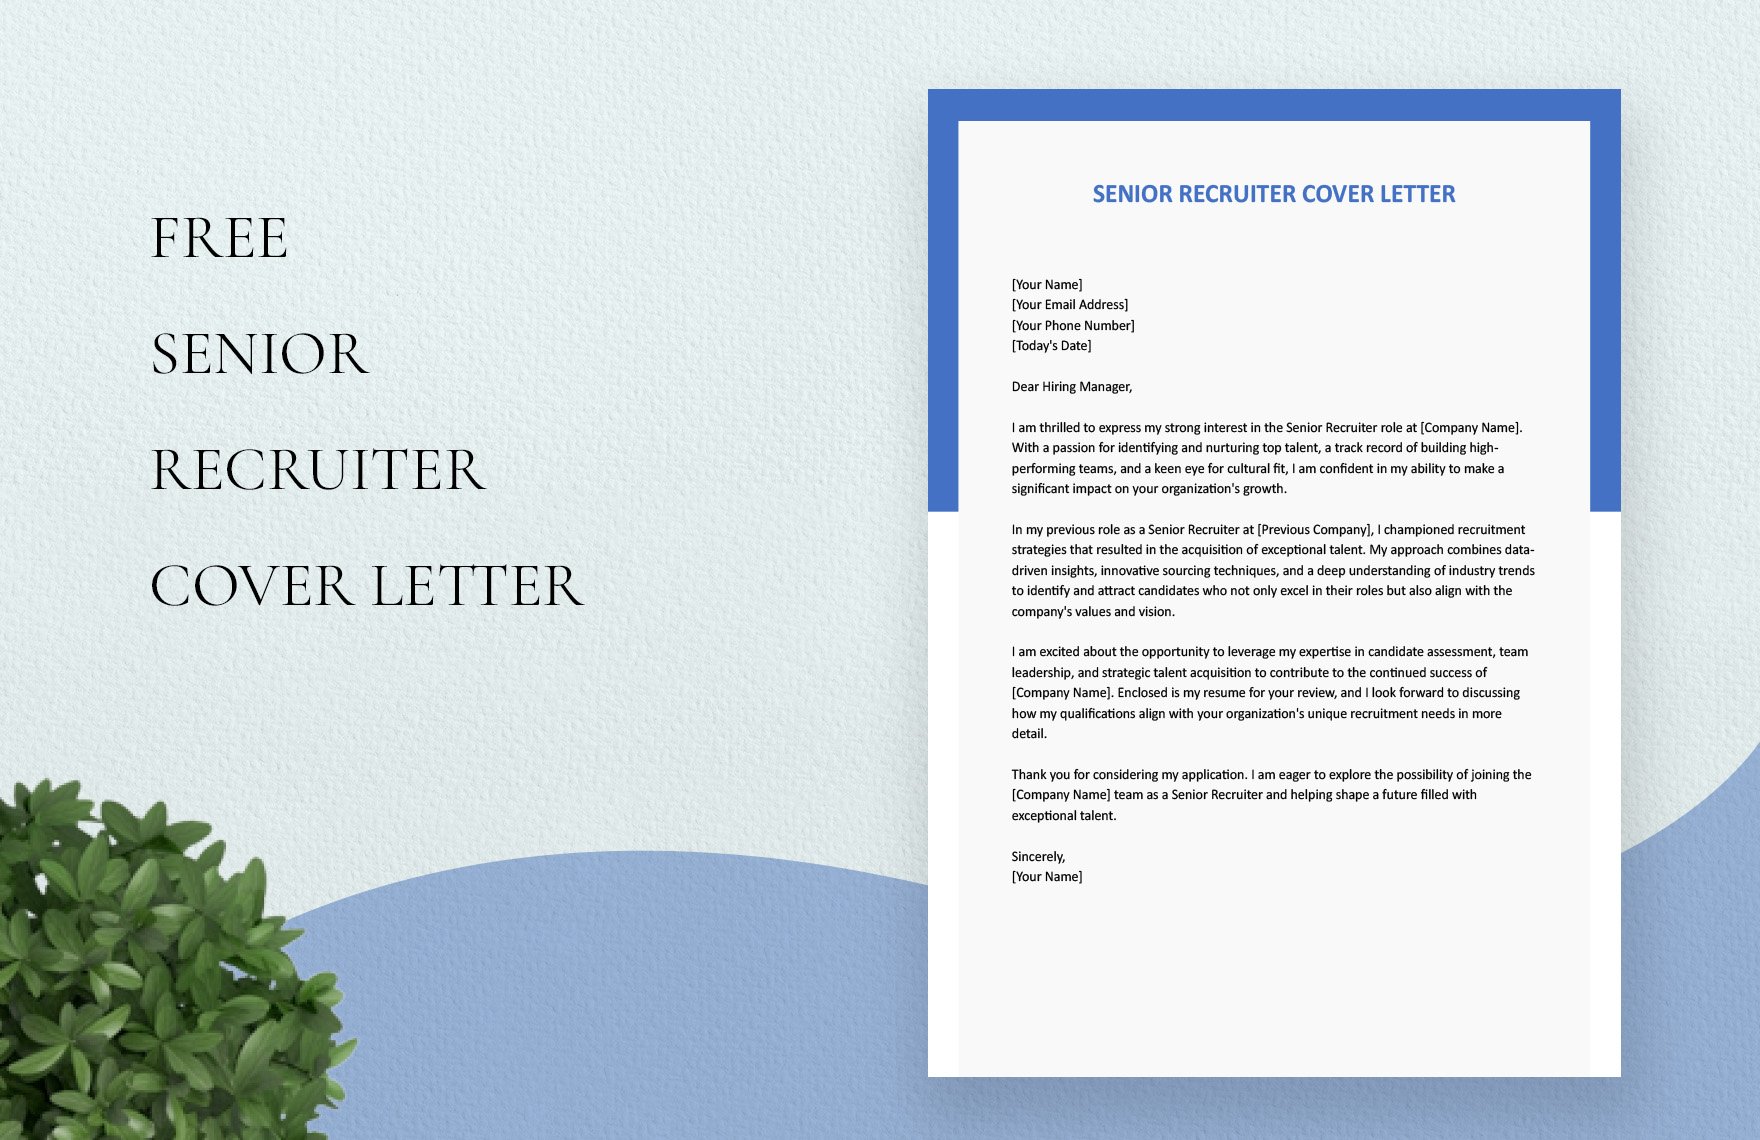 Senior Recruiter Cover Letter in Word, Google Docs